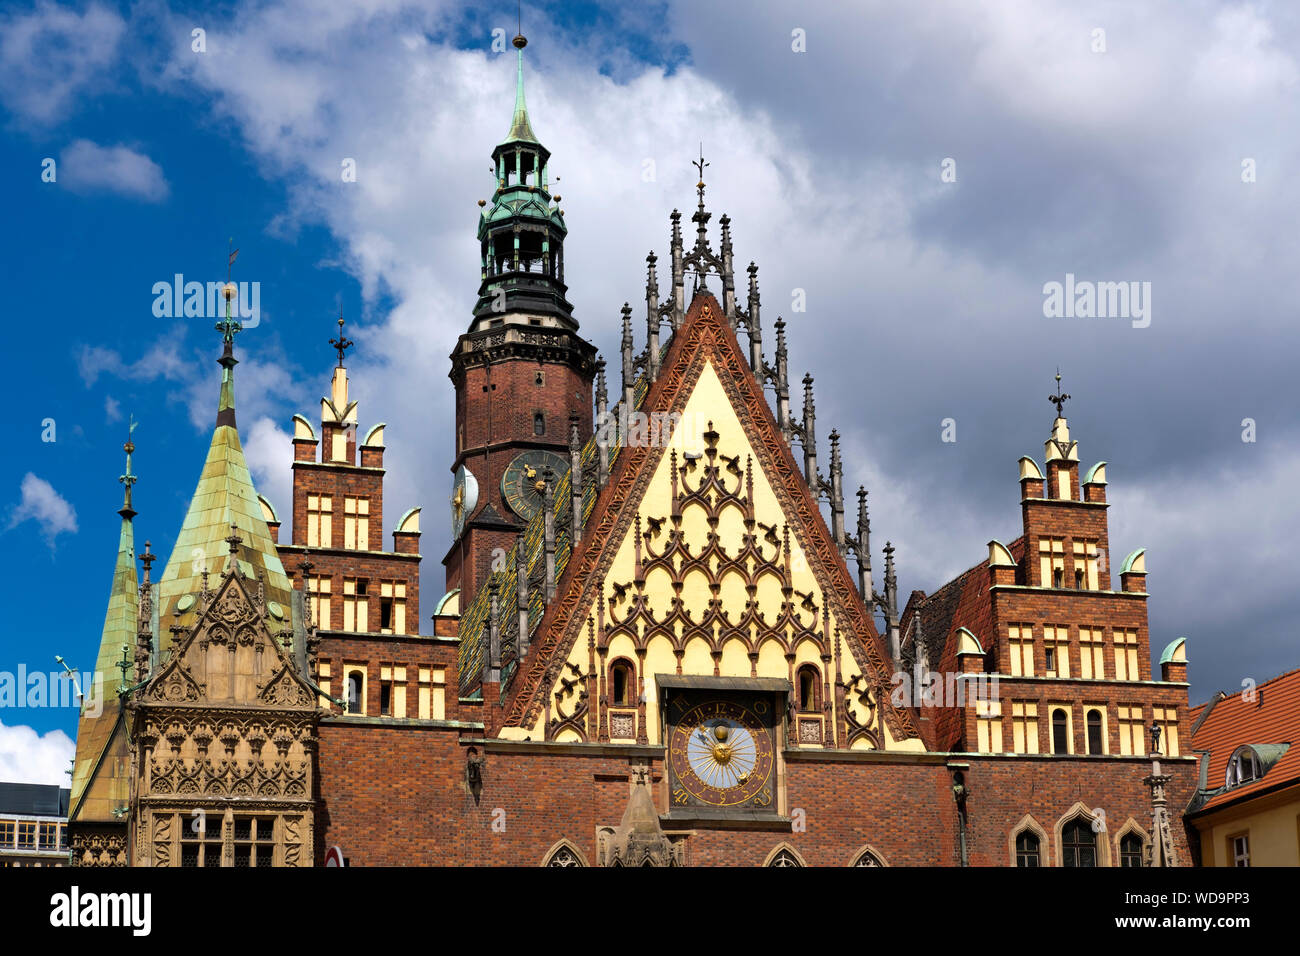 Die reich verzierten östlichen Fassade von Stary Ratusz, das Alte Rathaus, in Rynek, dem Marktplatz in Wroclaw, Polen. Stockfoto